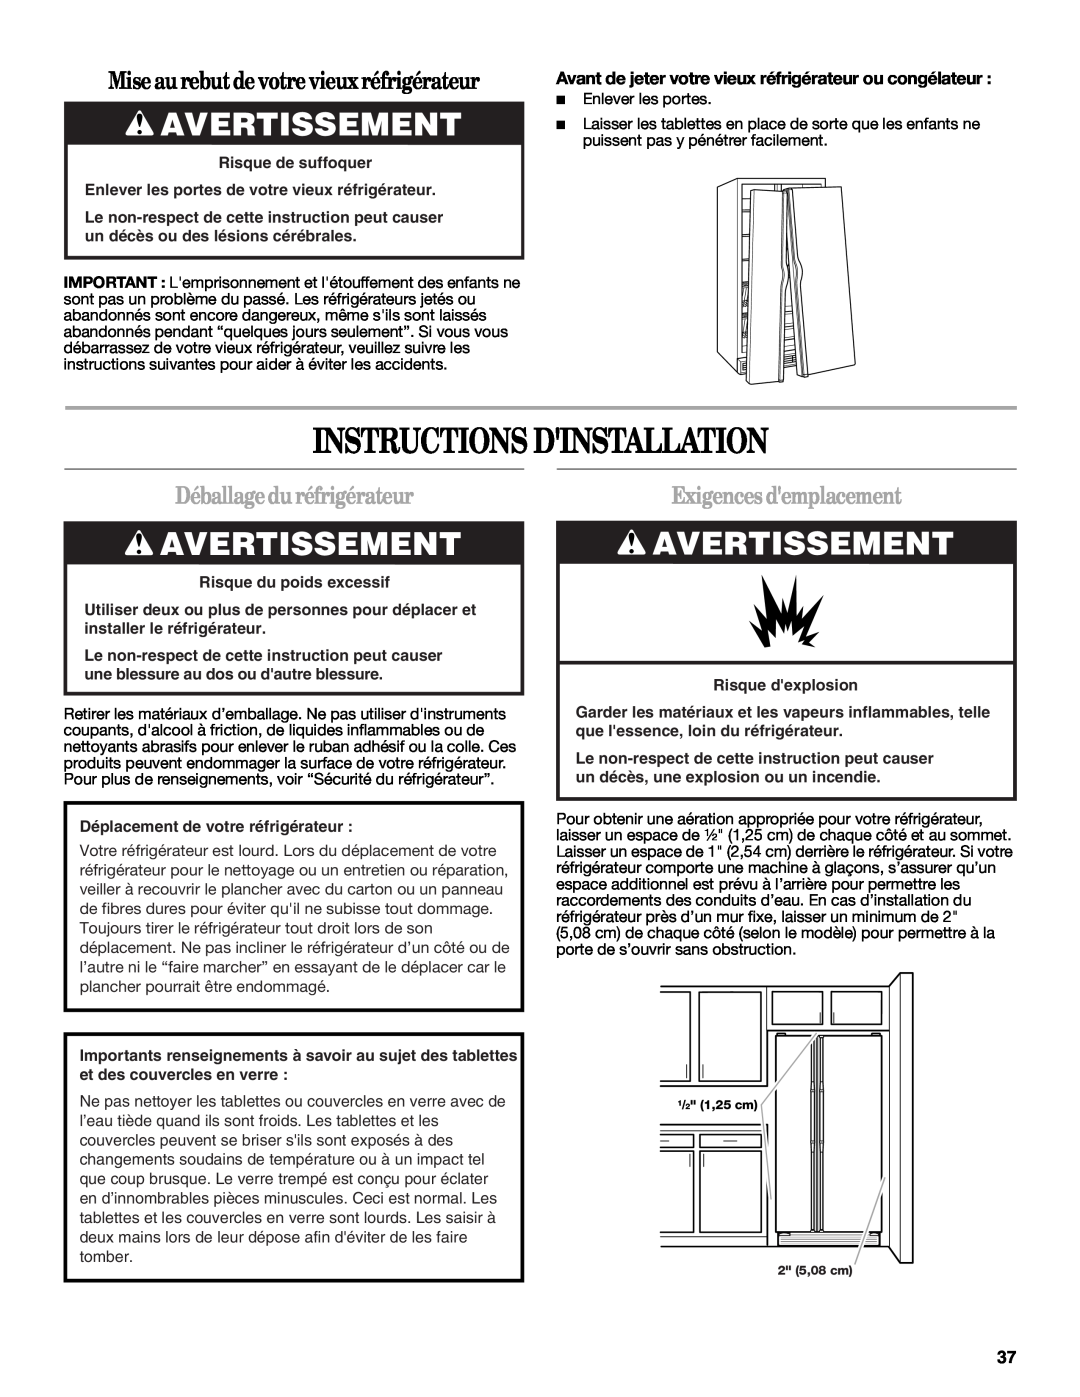 Amana W10321485A Instructions Dinstallation, Avertissement, Mise au rebutde votre vieux réfrigérateur, Risque dexplosion 